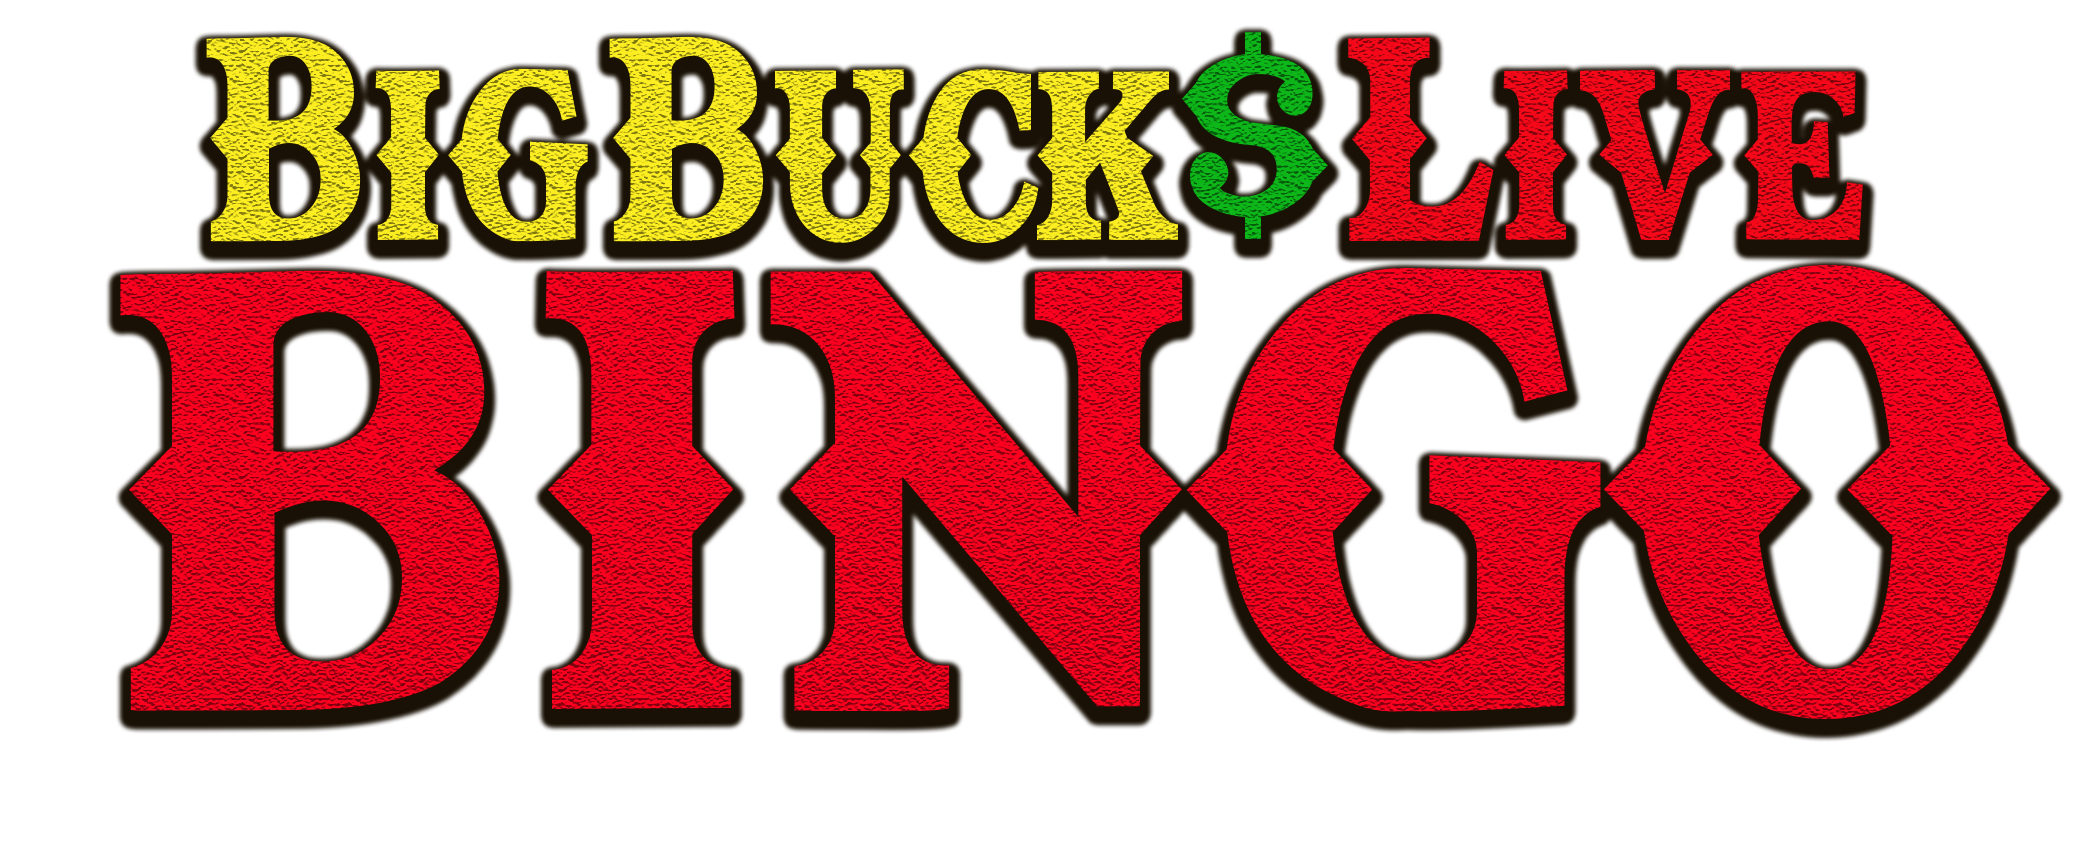 Big Bucks Live Bingo